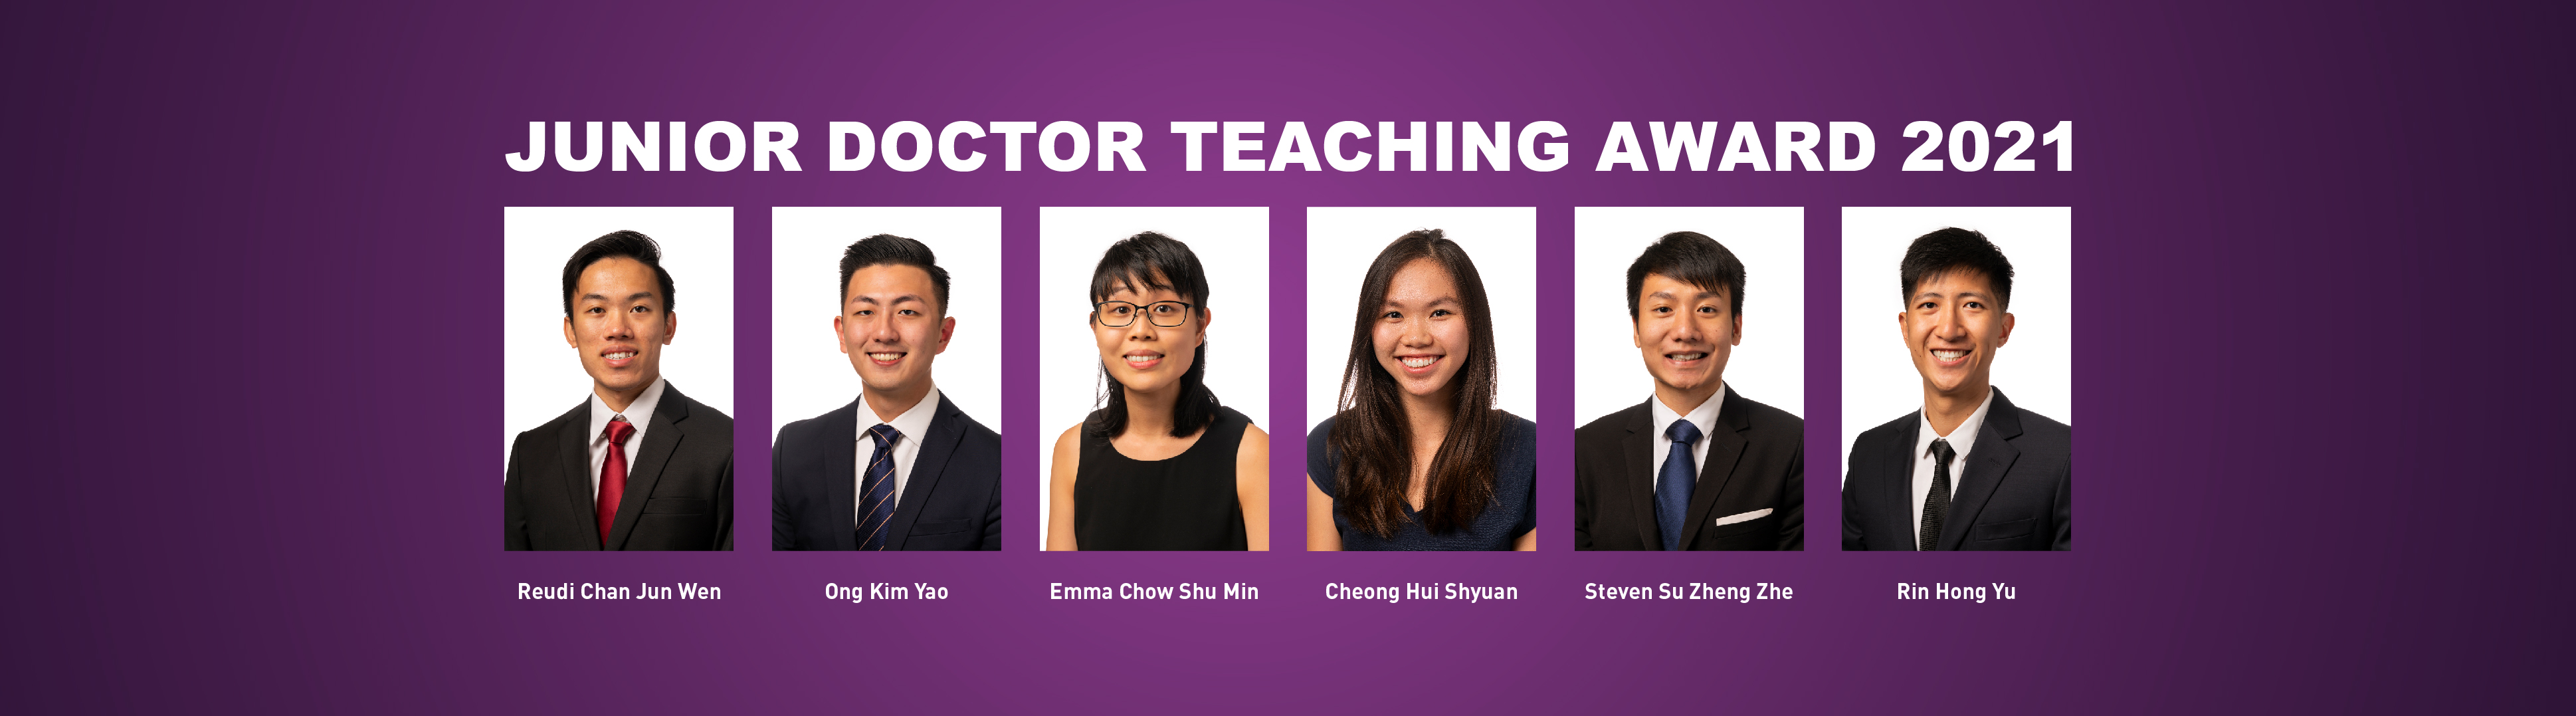 LKCMedicine Yong Doctors Win Teaching Award